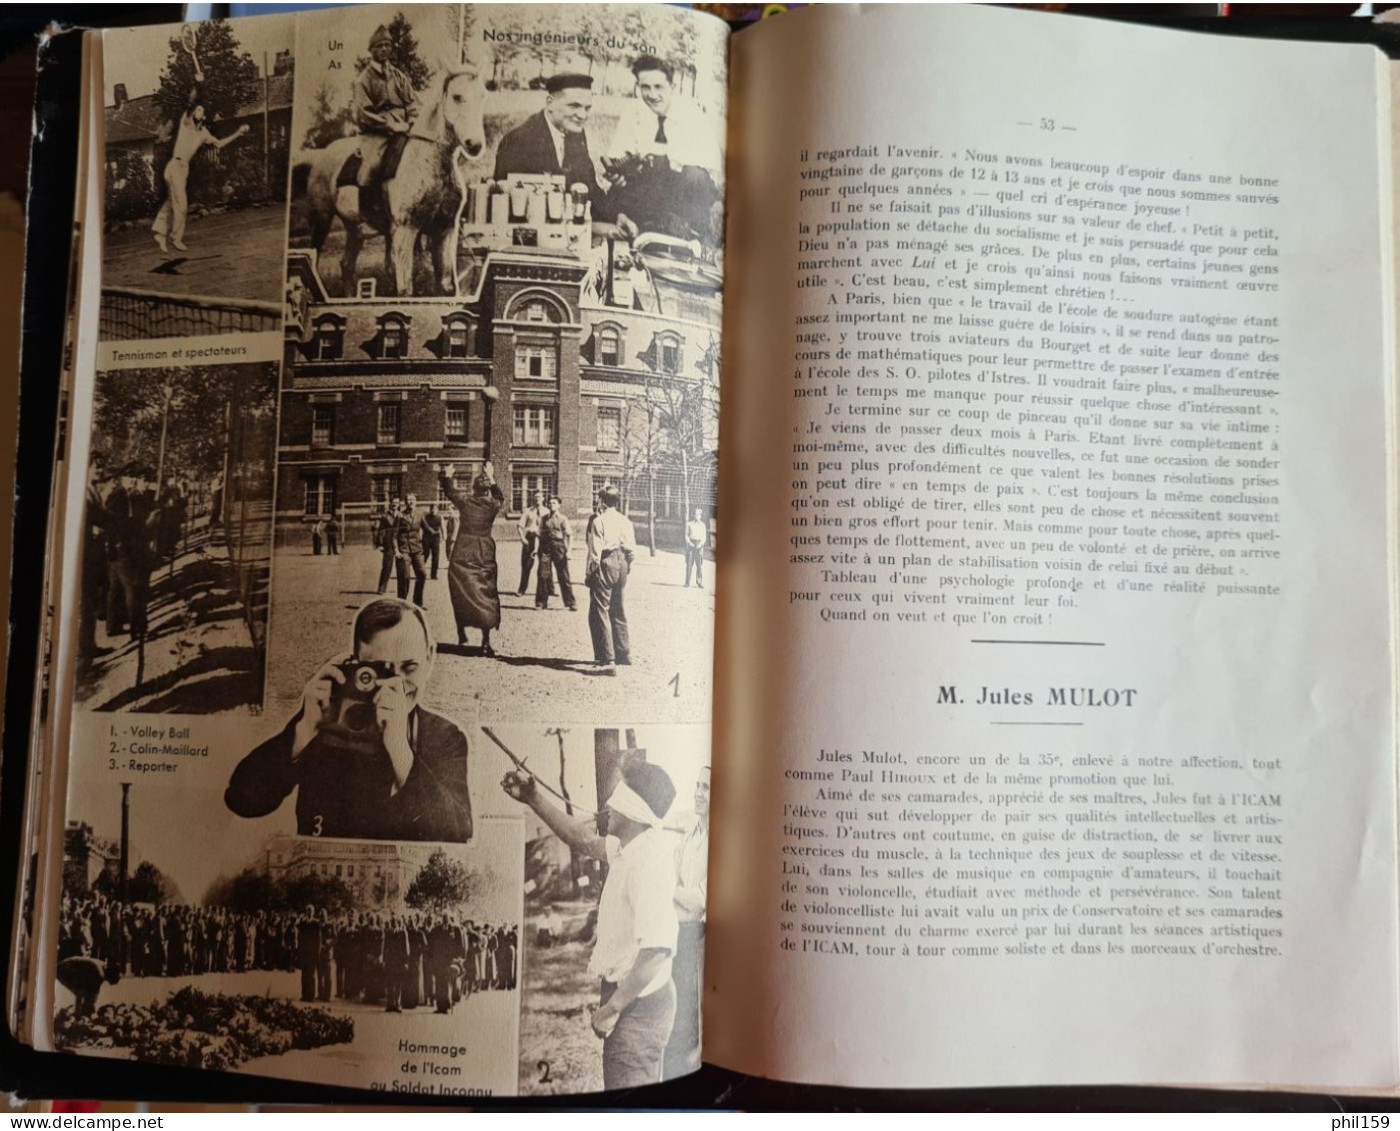 Bulletin annuel des élèves de l'ICAM 1936-1937